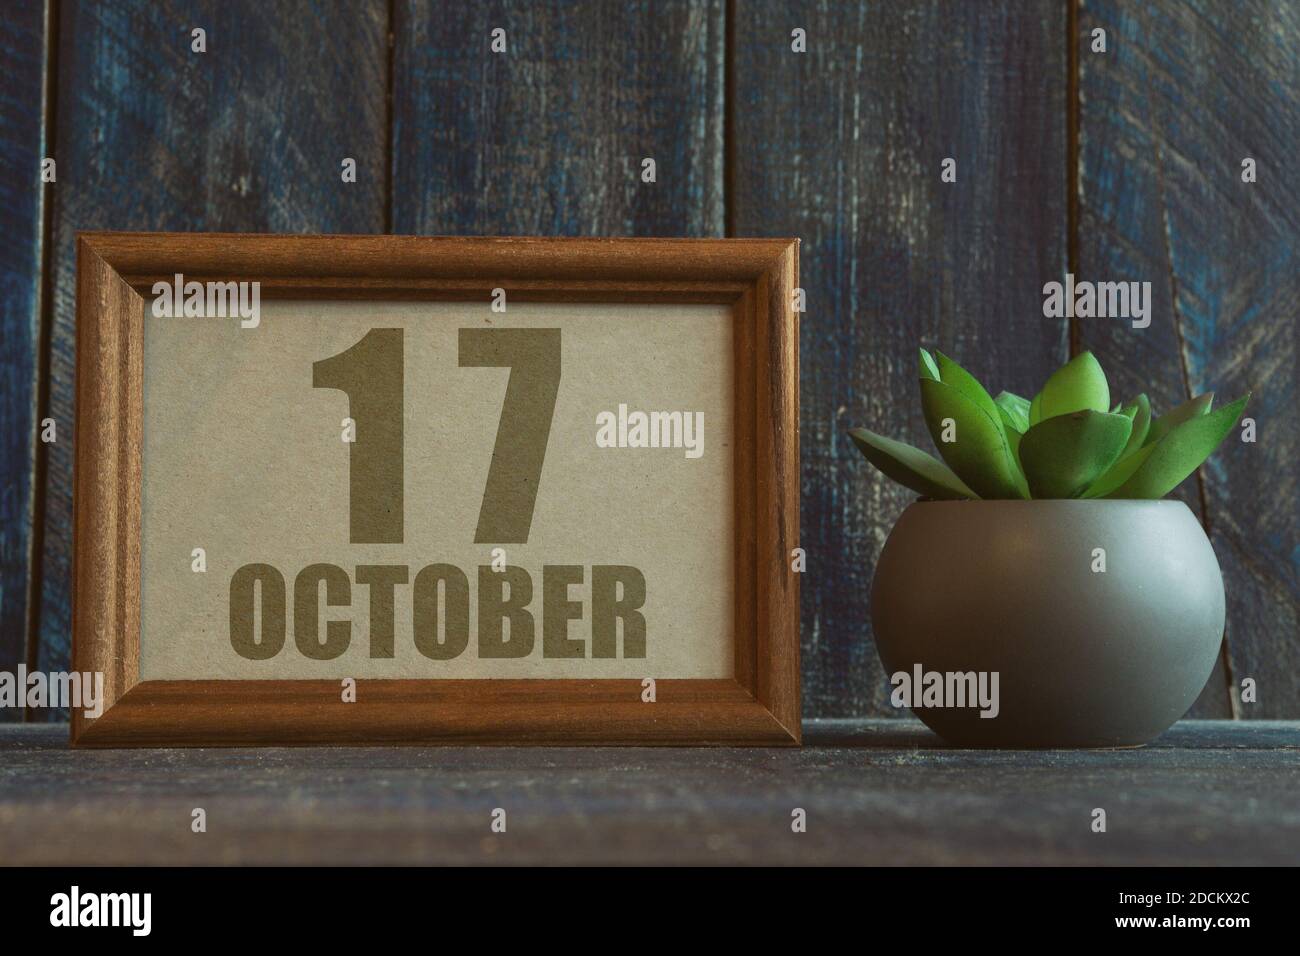 17 octobre. Jour 17 du mois, date dans le cadre à côté de succulent sur fond de bois automne mois, jour de l'année concept Banque D'Images